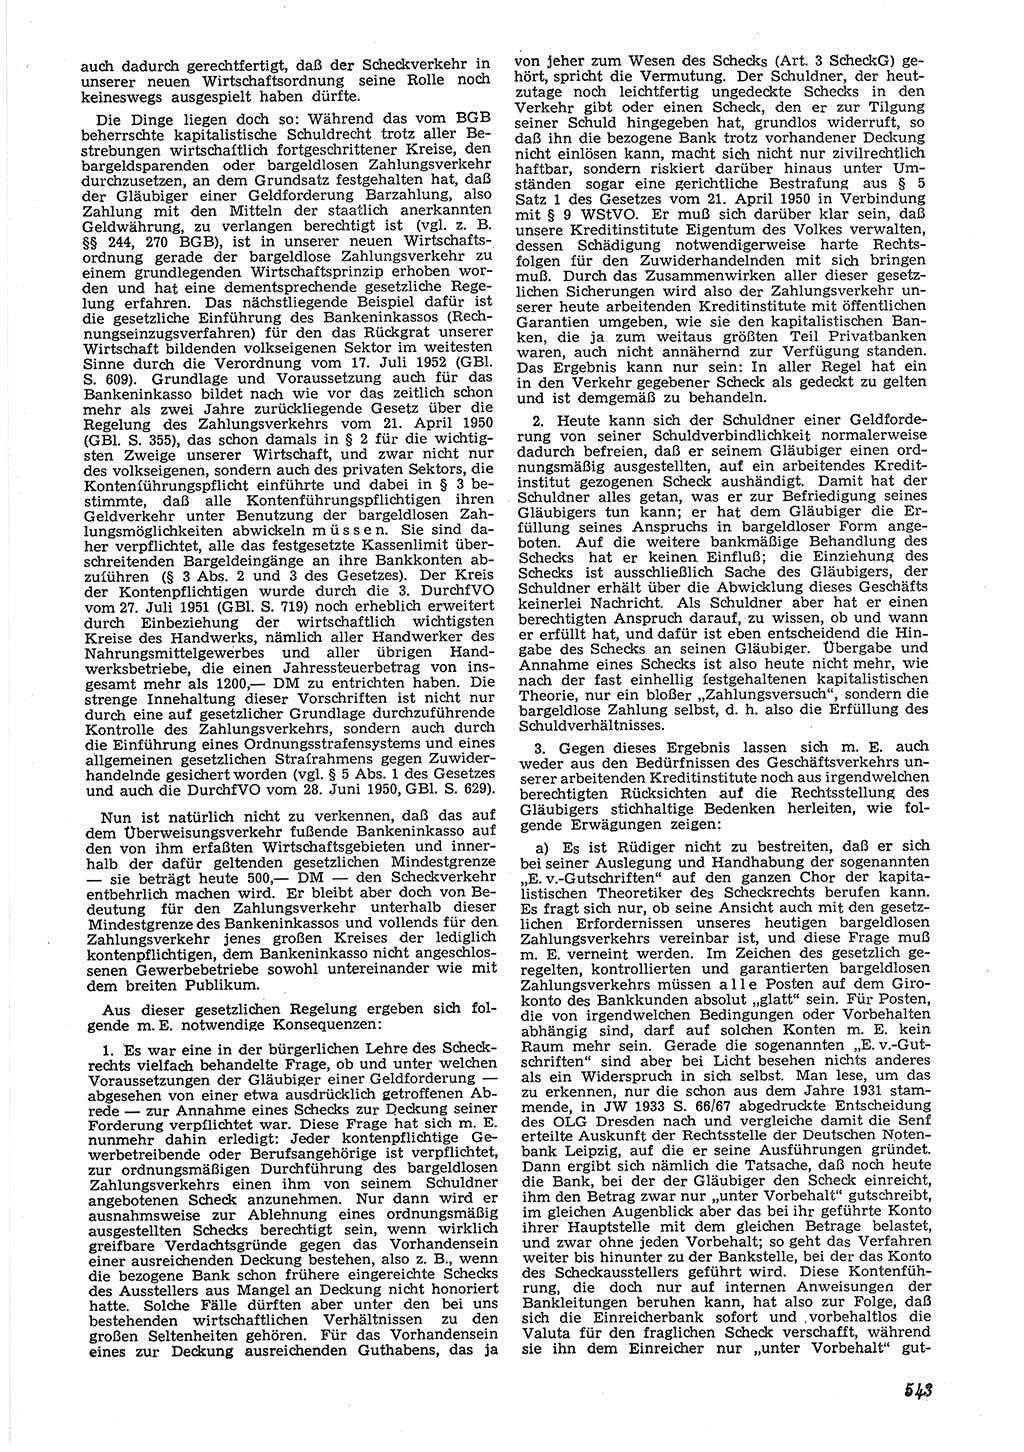 Neue Justiz (NJ), Zeitschrift für Recht und Rechtswissenschaft [Deutsche Demokratische Republik (DDR)], 6. Jahrgang 1952, Seite 543 (NJ DDR 1952, S. 543)